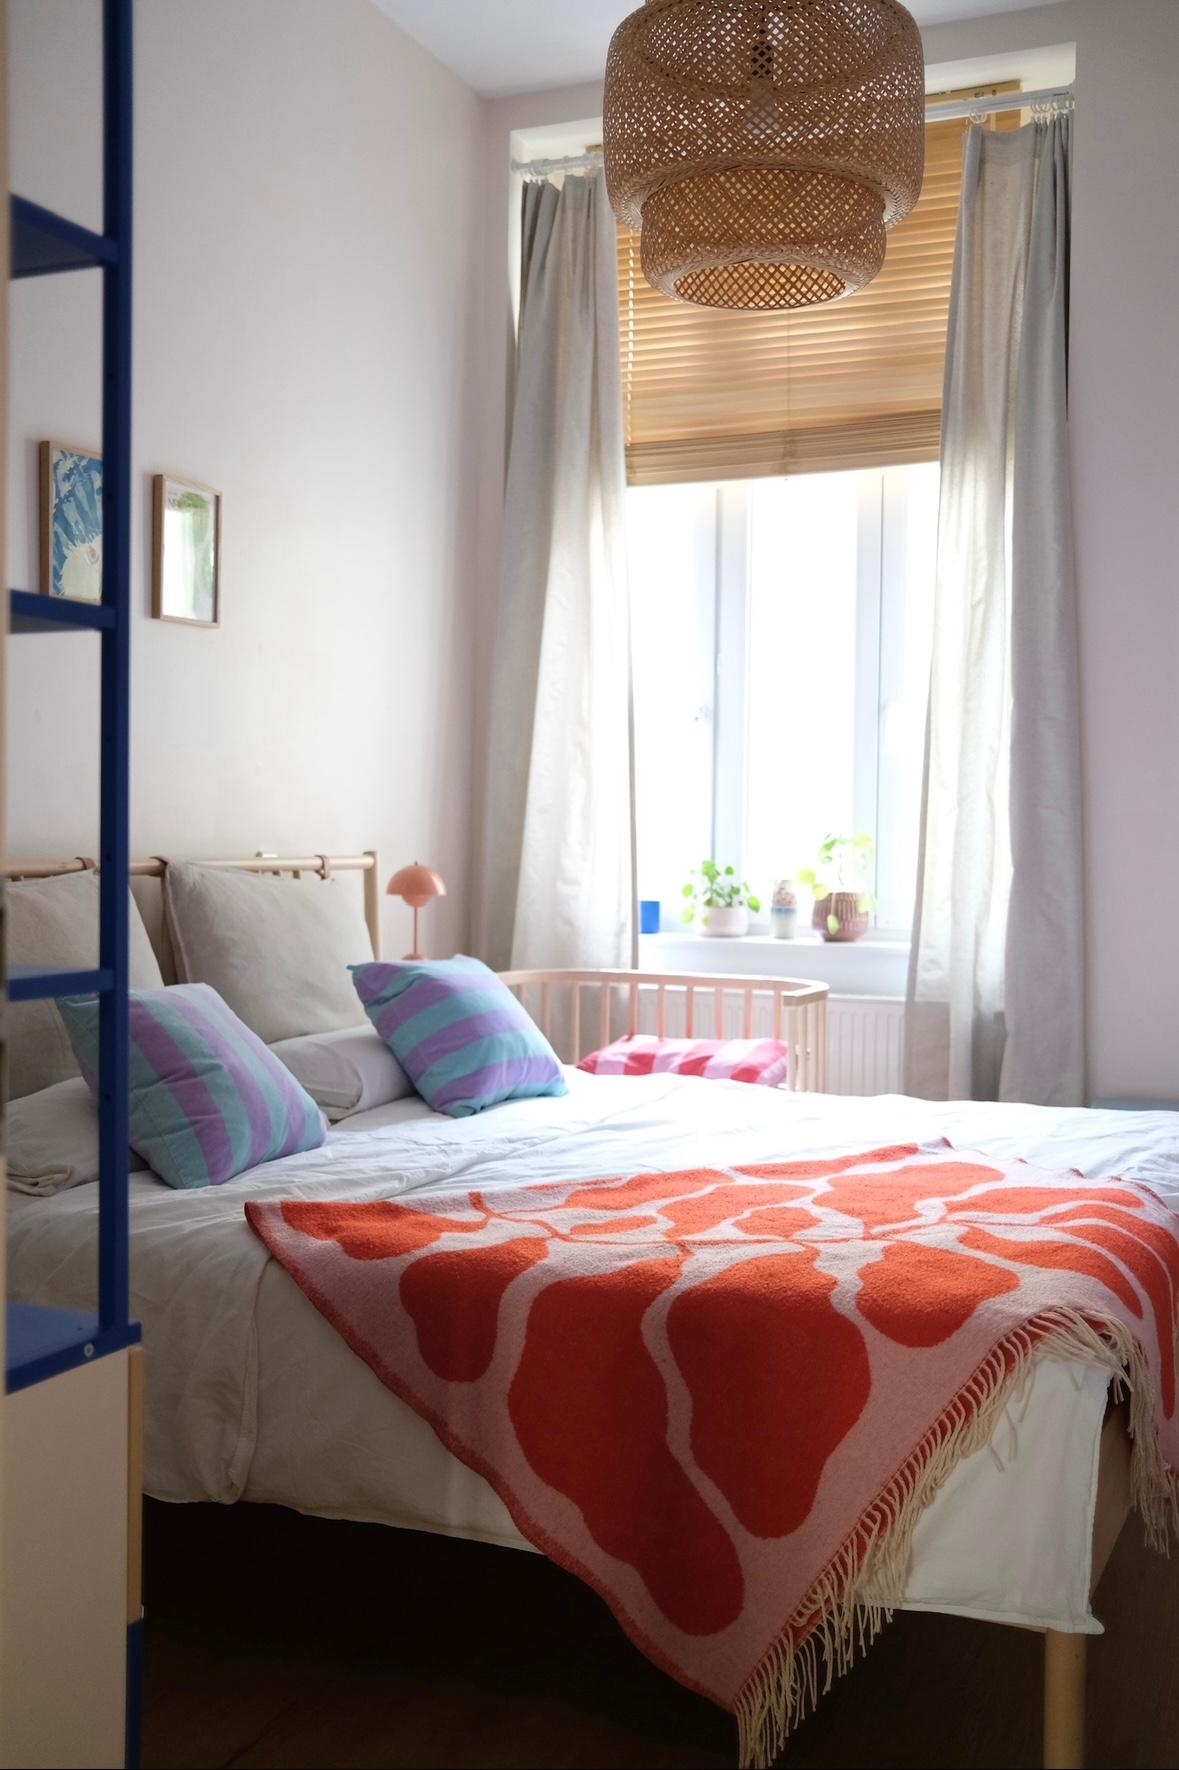 #schlafzimmer #altbauwohnung #couchliebt #gemütlich #farbenfroh #interior #rattan